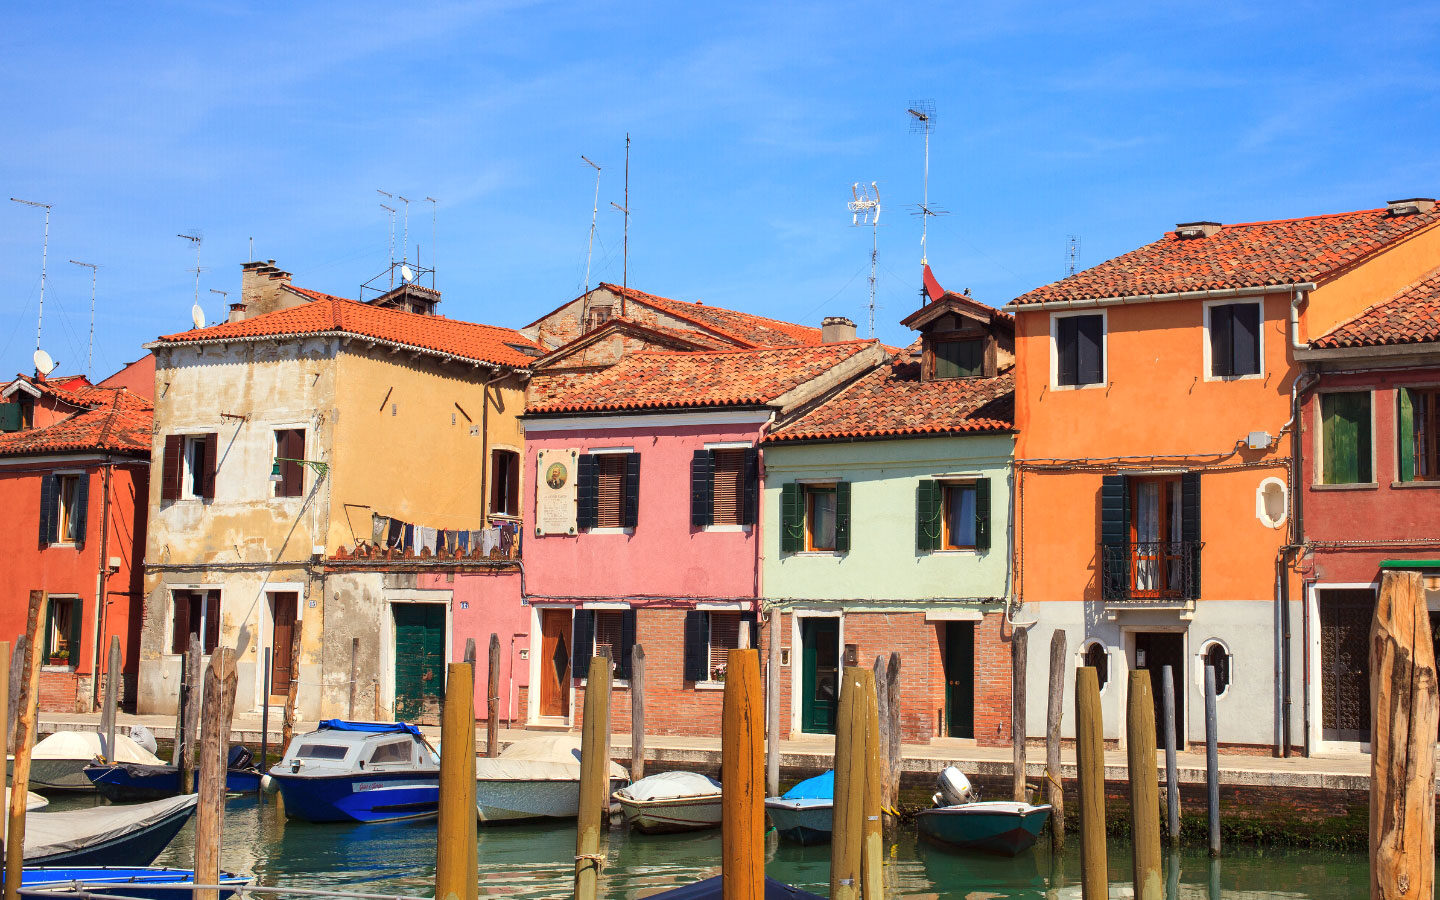 Colourful buildings in Murano, Venice